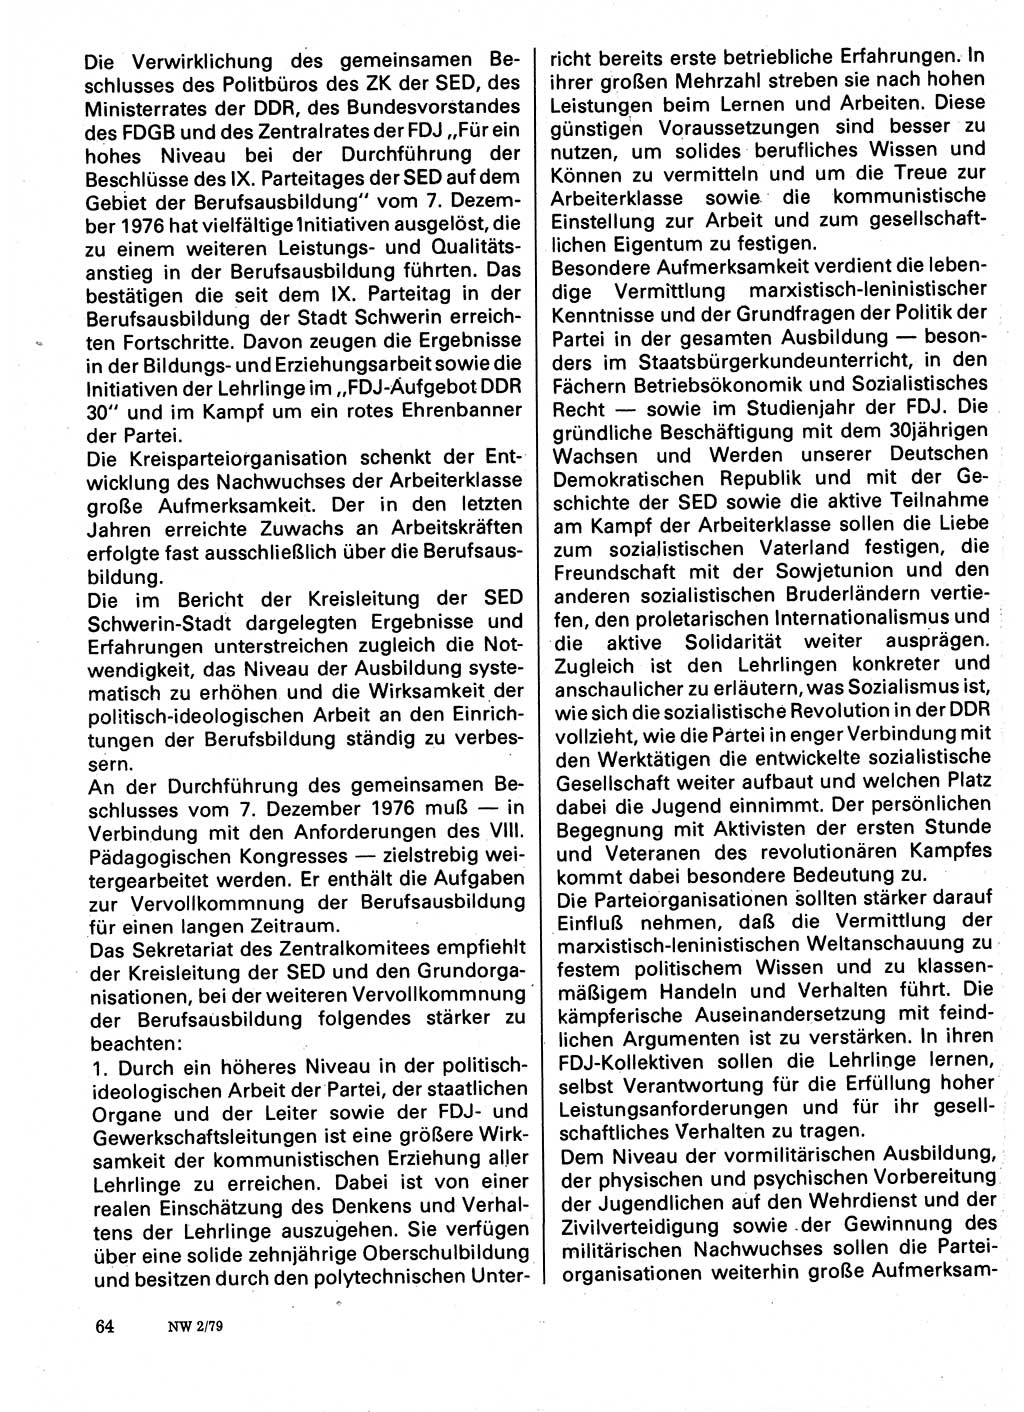 Neuer Weg (NW), Organ des Zentralkomitees (ZK) der SED (Sozialistische Einheitspartei Deutschlands) für Fragen des Parteilebens, 34. Jahrgang [Deutsche Demokratische Republik (DDR)] 1979, Seite 64 (NW ZK SED DDR 1979, S. 64)